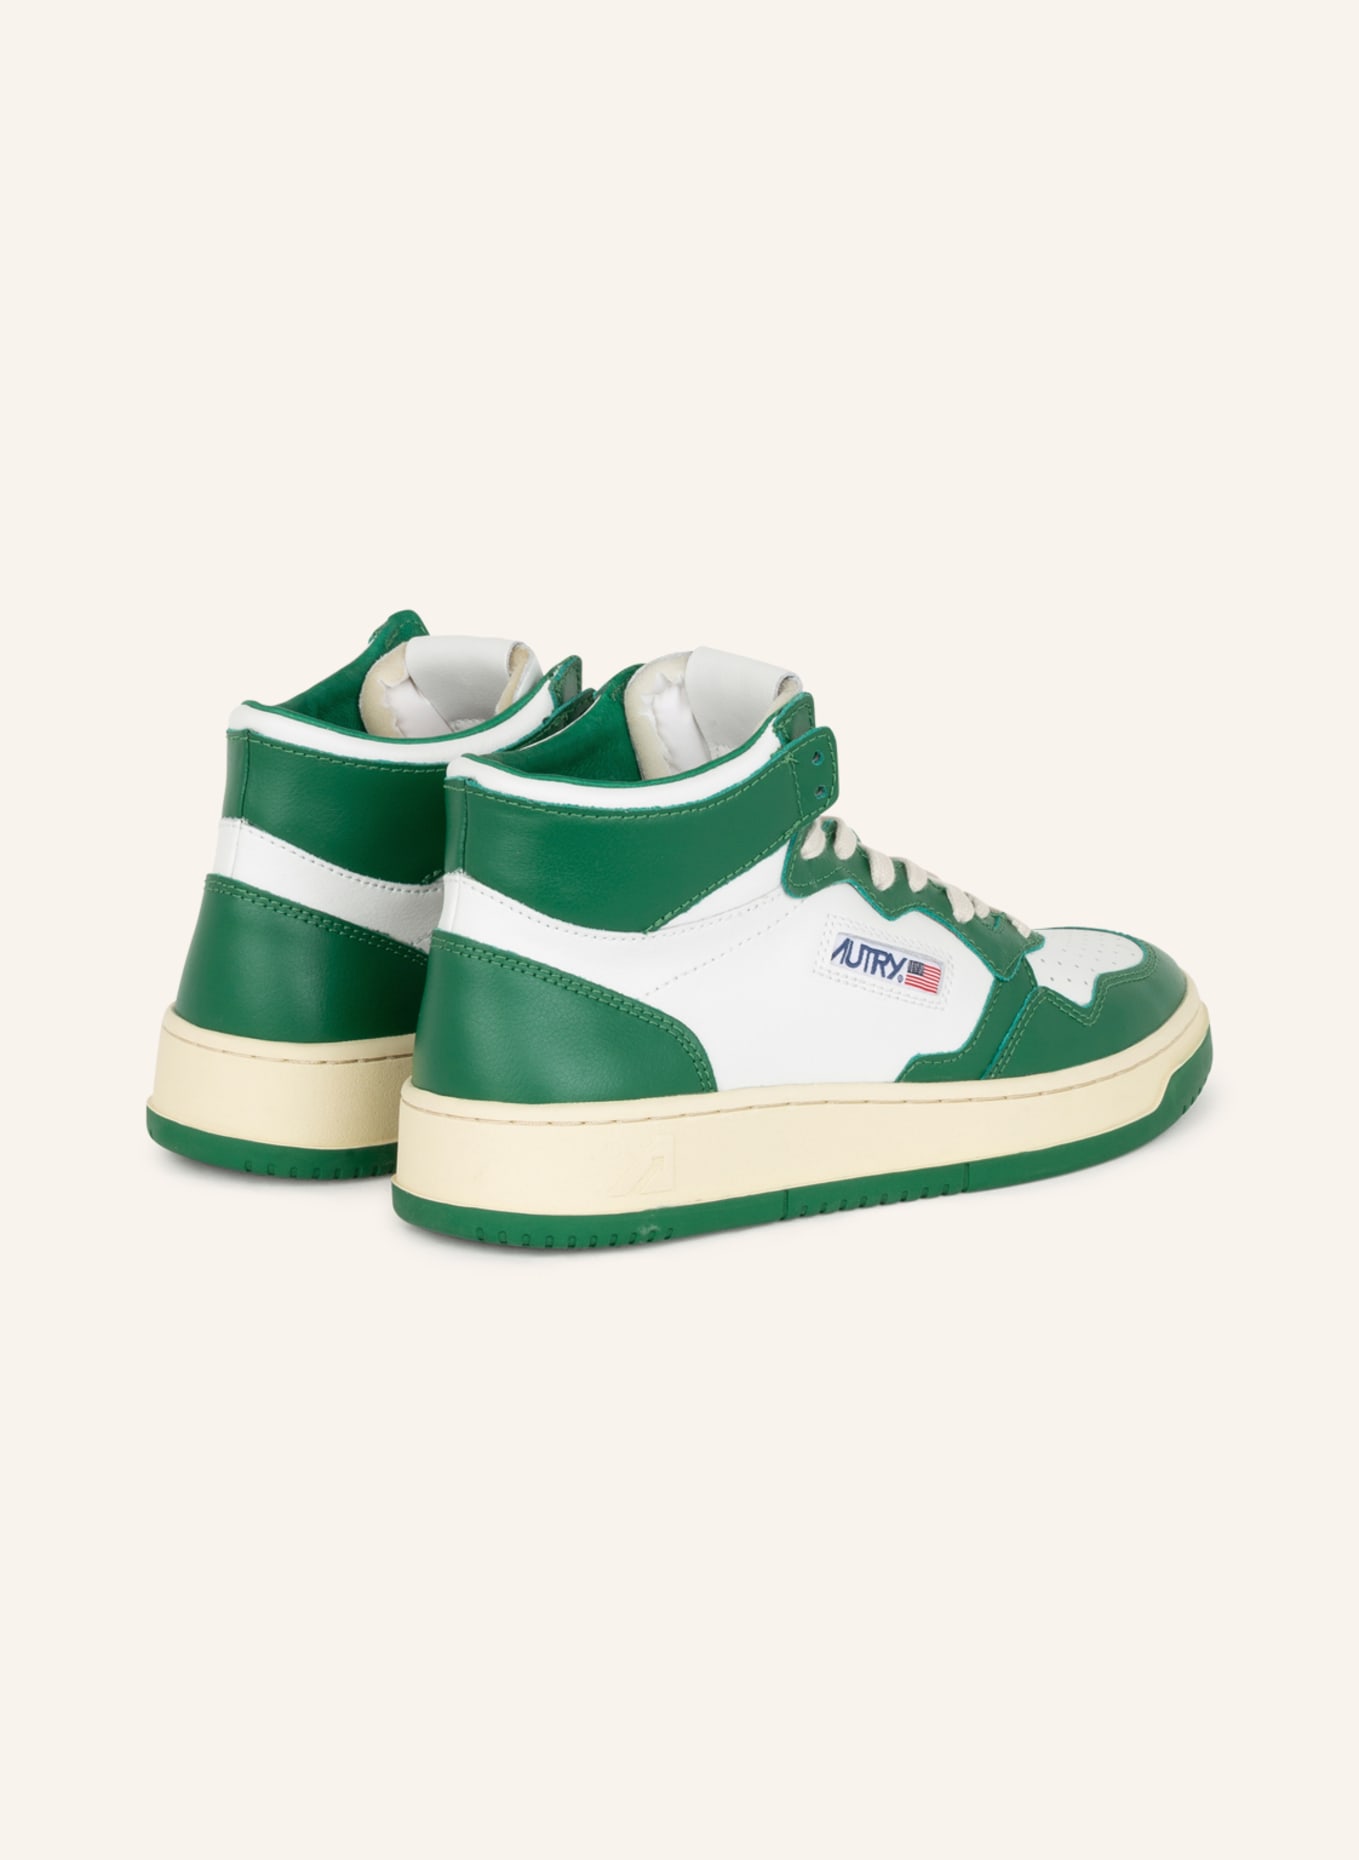 AUTRY Hightop-Sneaker MEDALIST, Farbe: WEISS/ GRÜN (Bild 2)